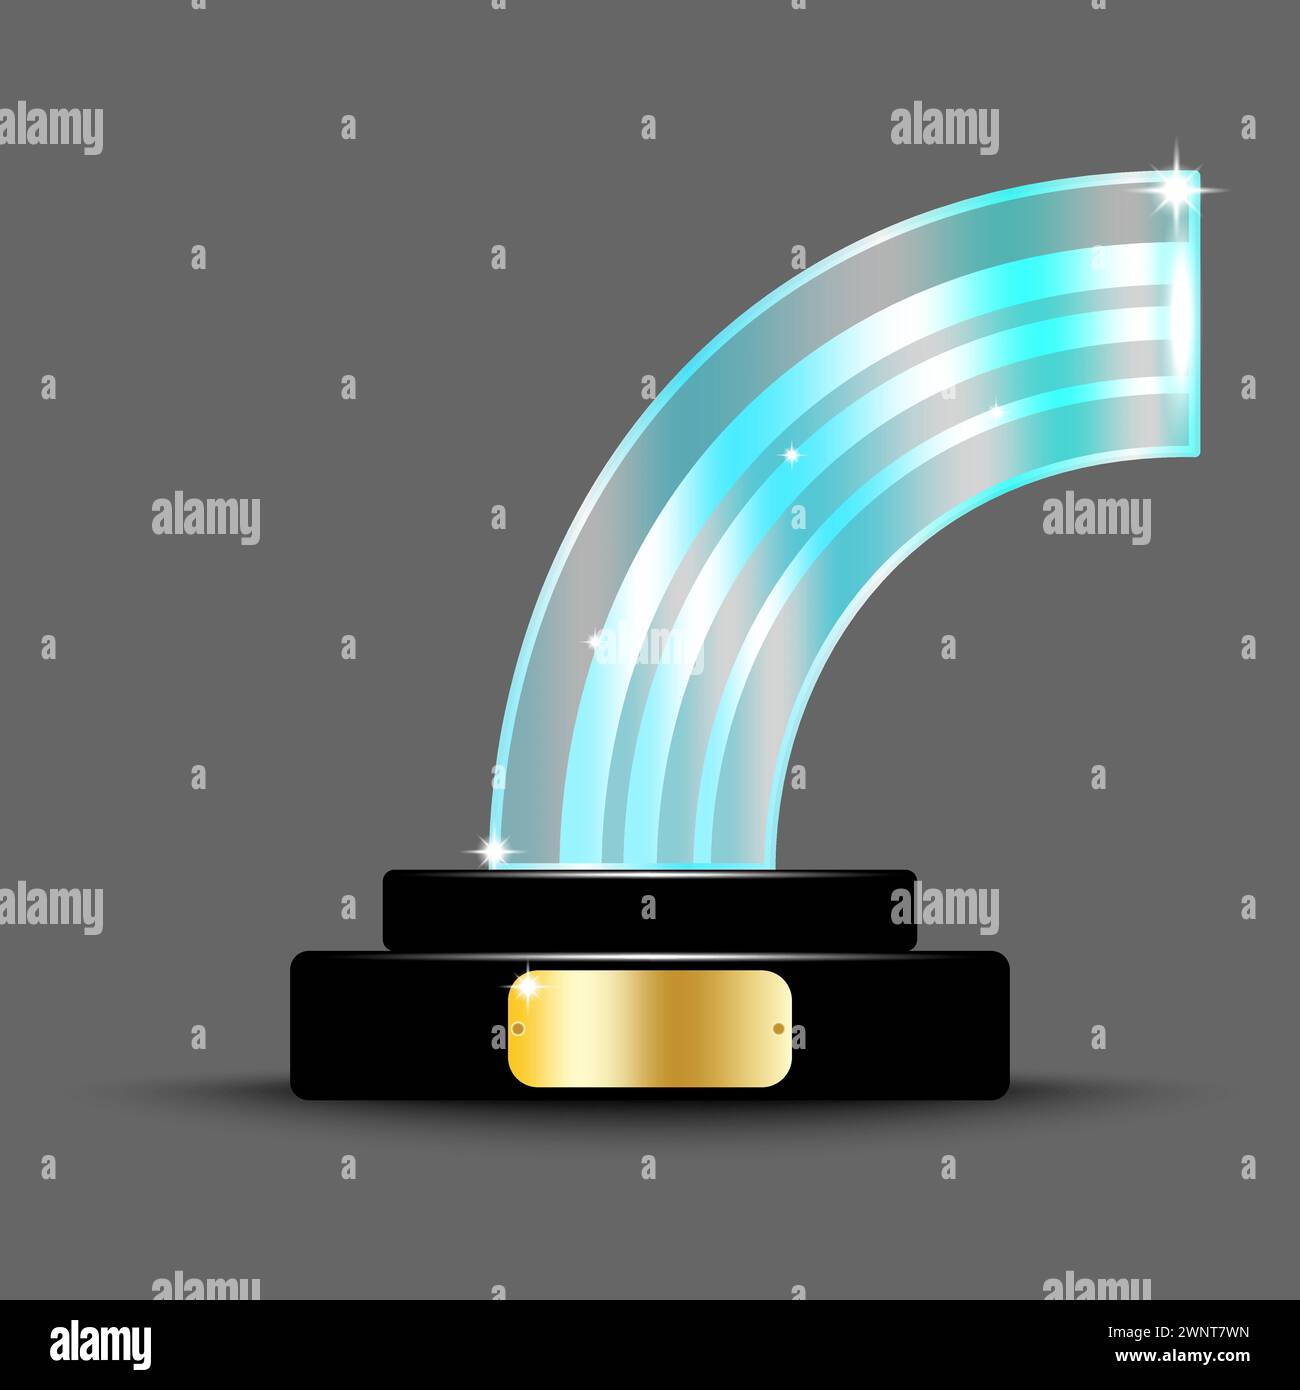 Design realistico del layout dei premi. Trofeo di vetro sotto forma di arco. arco in cristallo acrilico 3d. Illustrazione vettoriale. immagine stock. EPS 10. Illustrazione Vettoriale